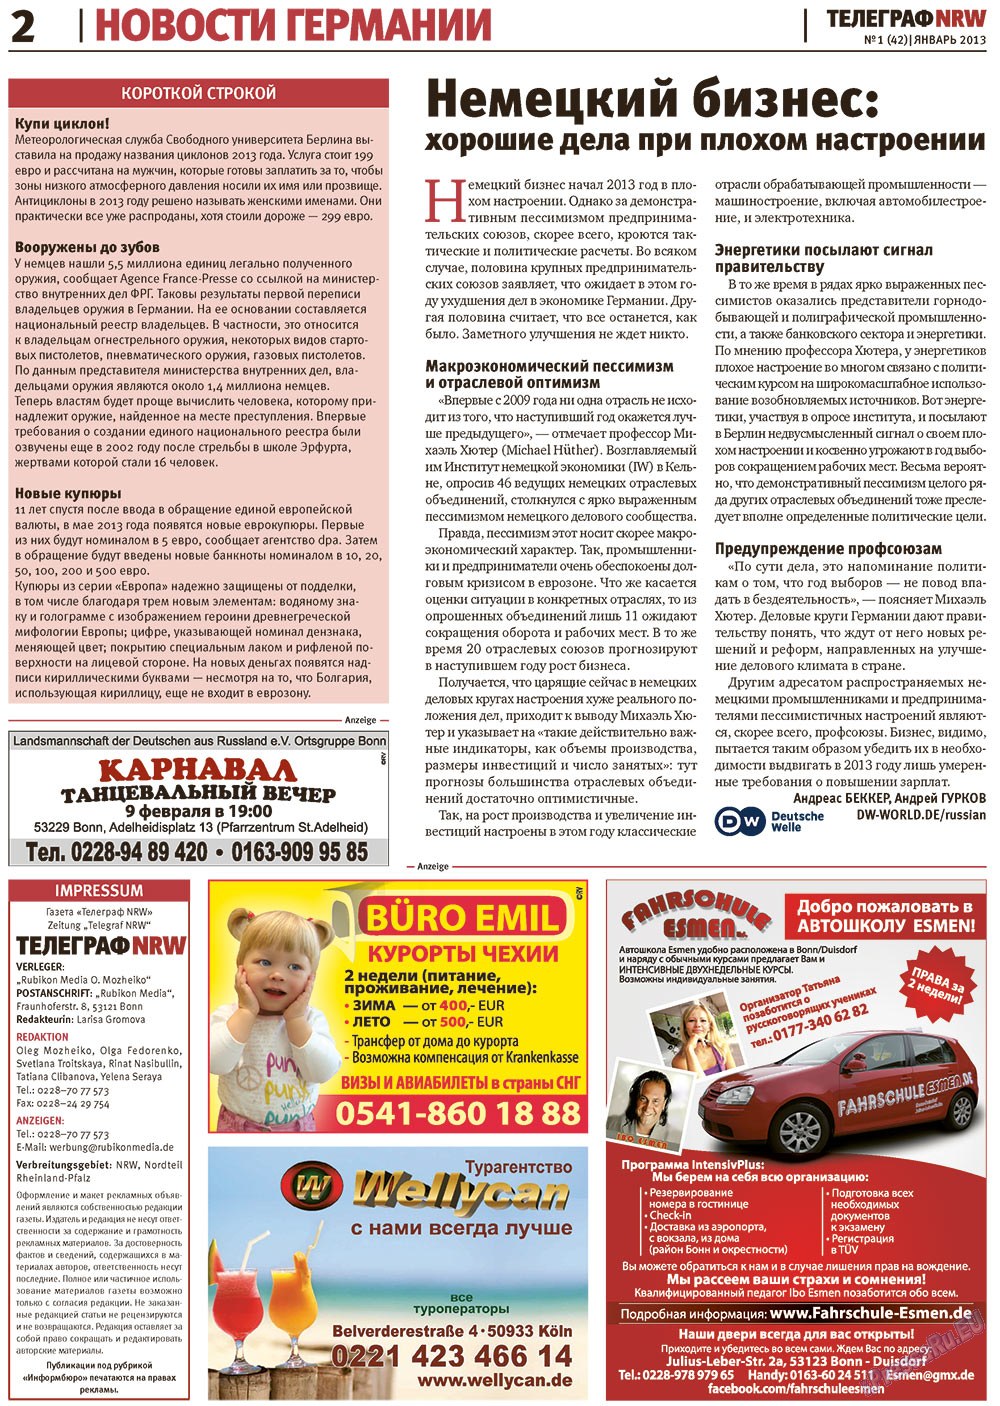 Телеграф NRW (газета). 2013 год, номер 1, стр. 2